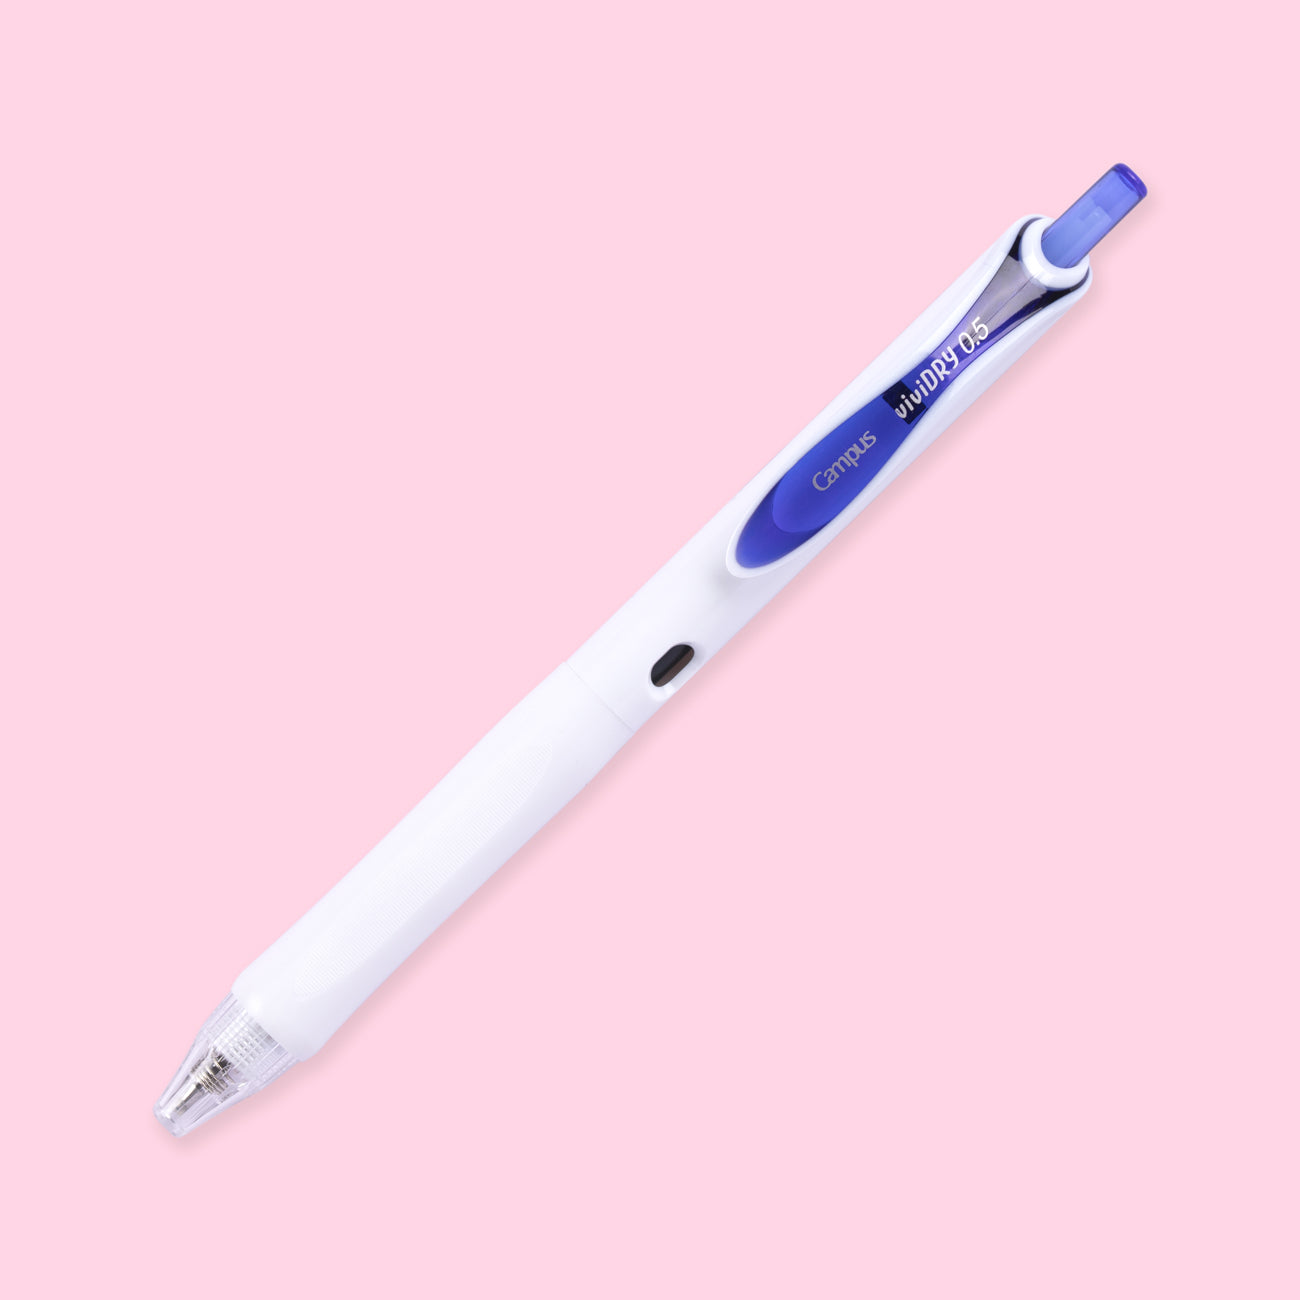 Kokuyo Campus viviDRY Retractable Gel Pen - 0.5 mm - Blue